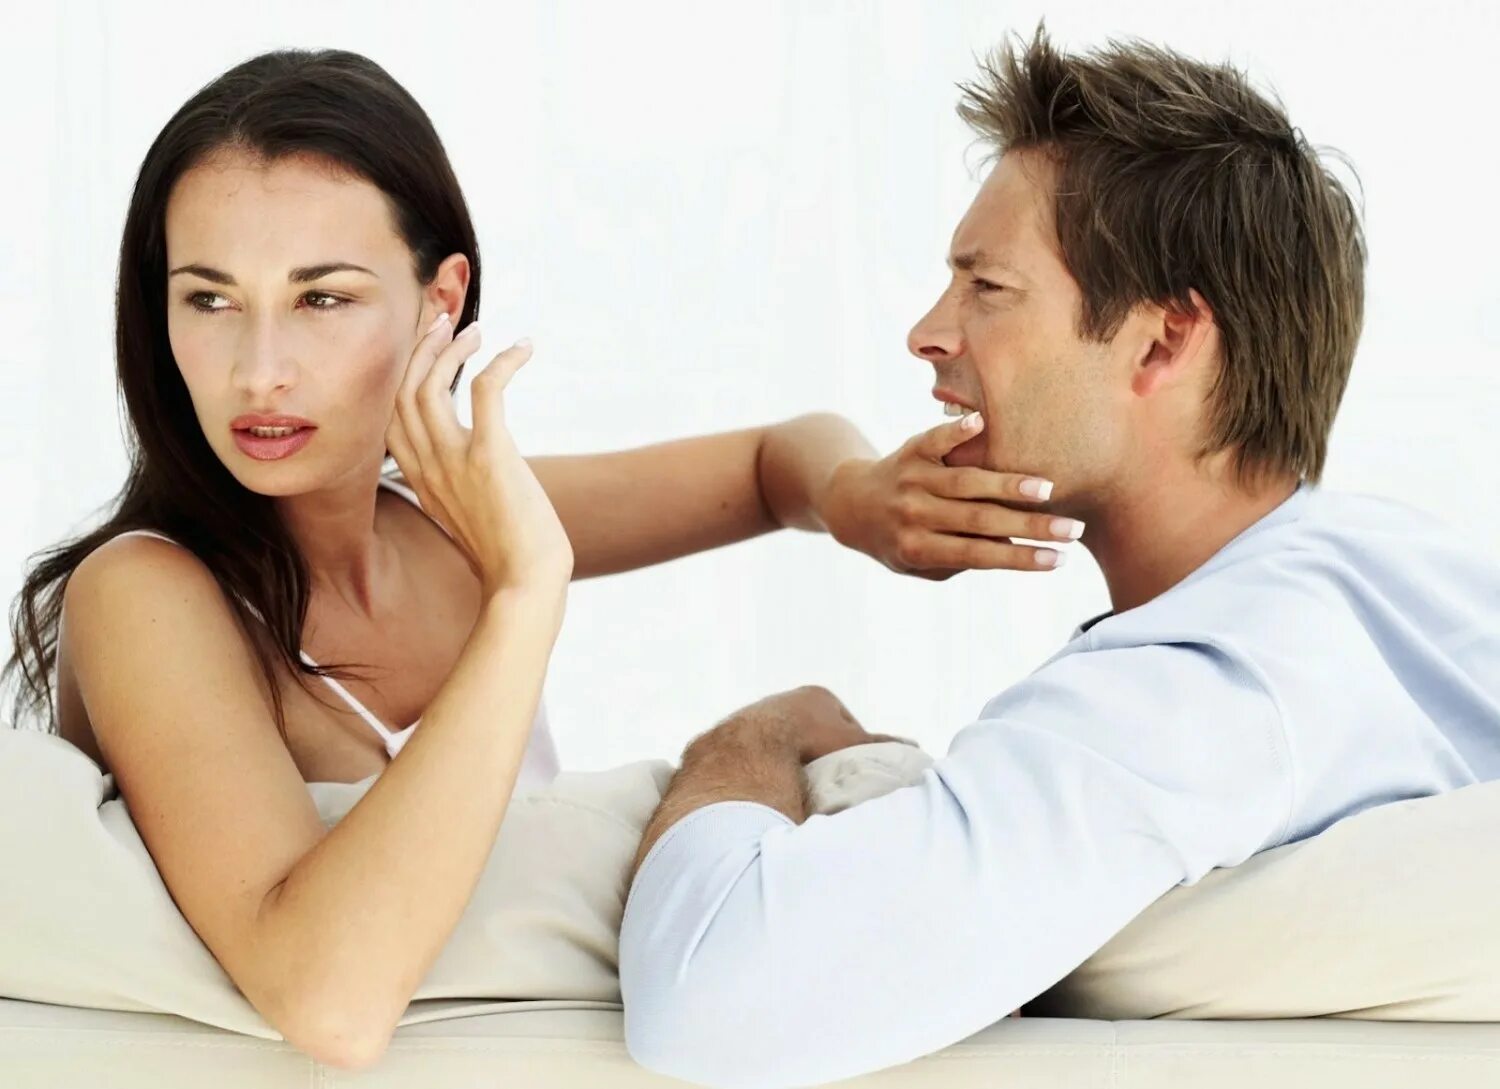 Мужчина и женщина ссорятся. Психология отношений между мужчиной и женщиной. Ссооа мужчины и женщин. Взаимоотношения мужчины и женщины. Муж и жена ссорятся